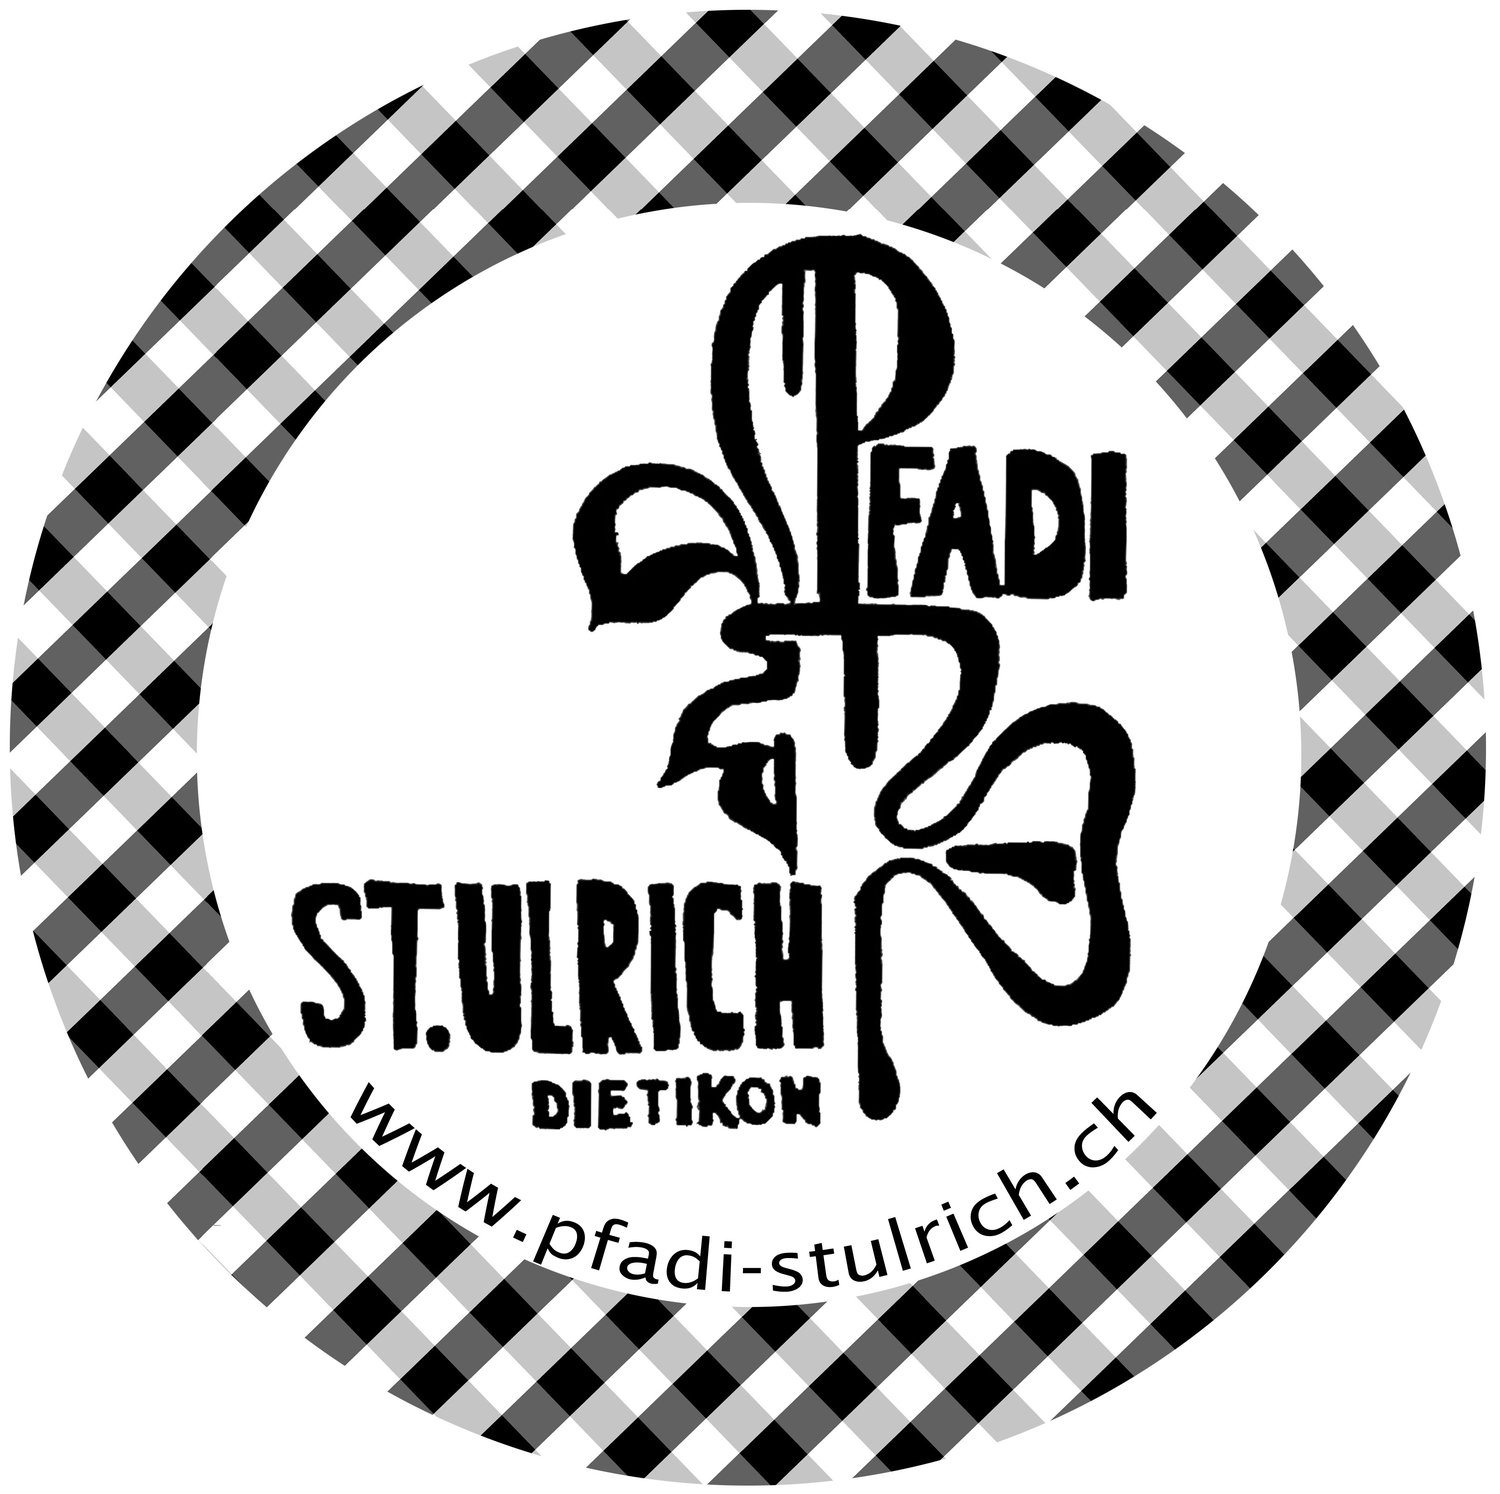 (c) Pfadi-stulrich.ch